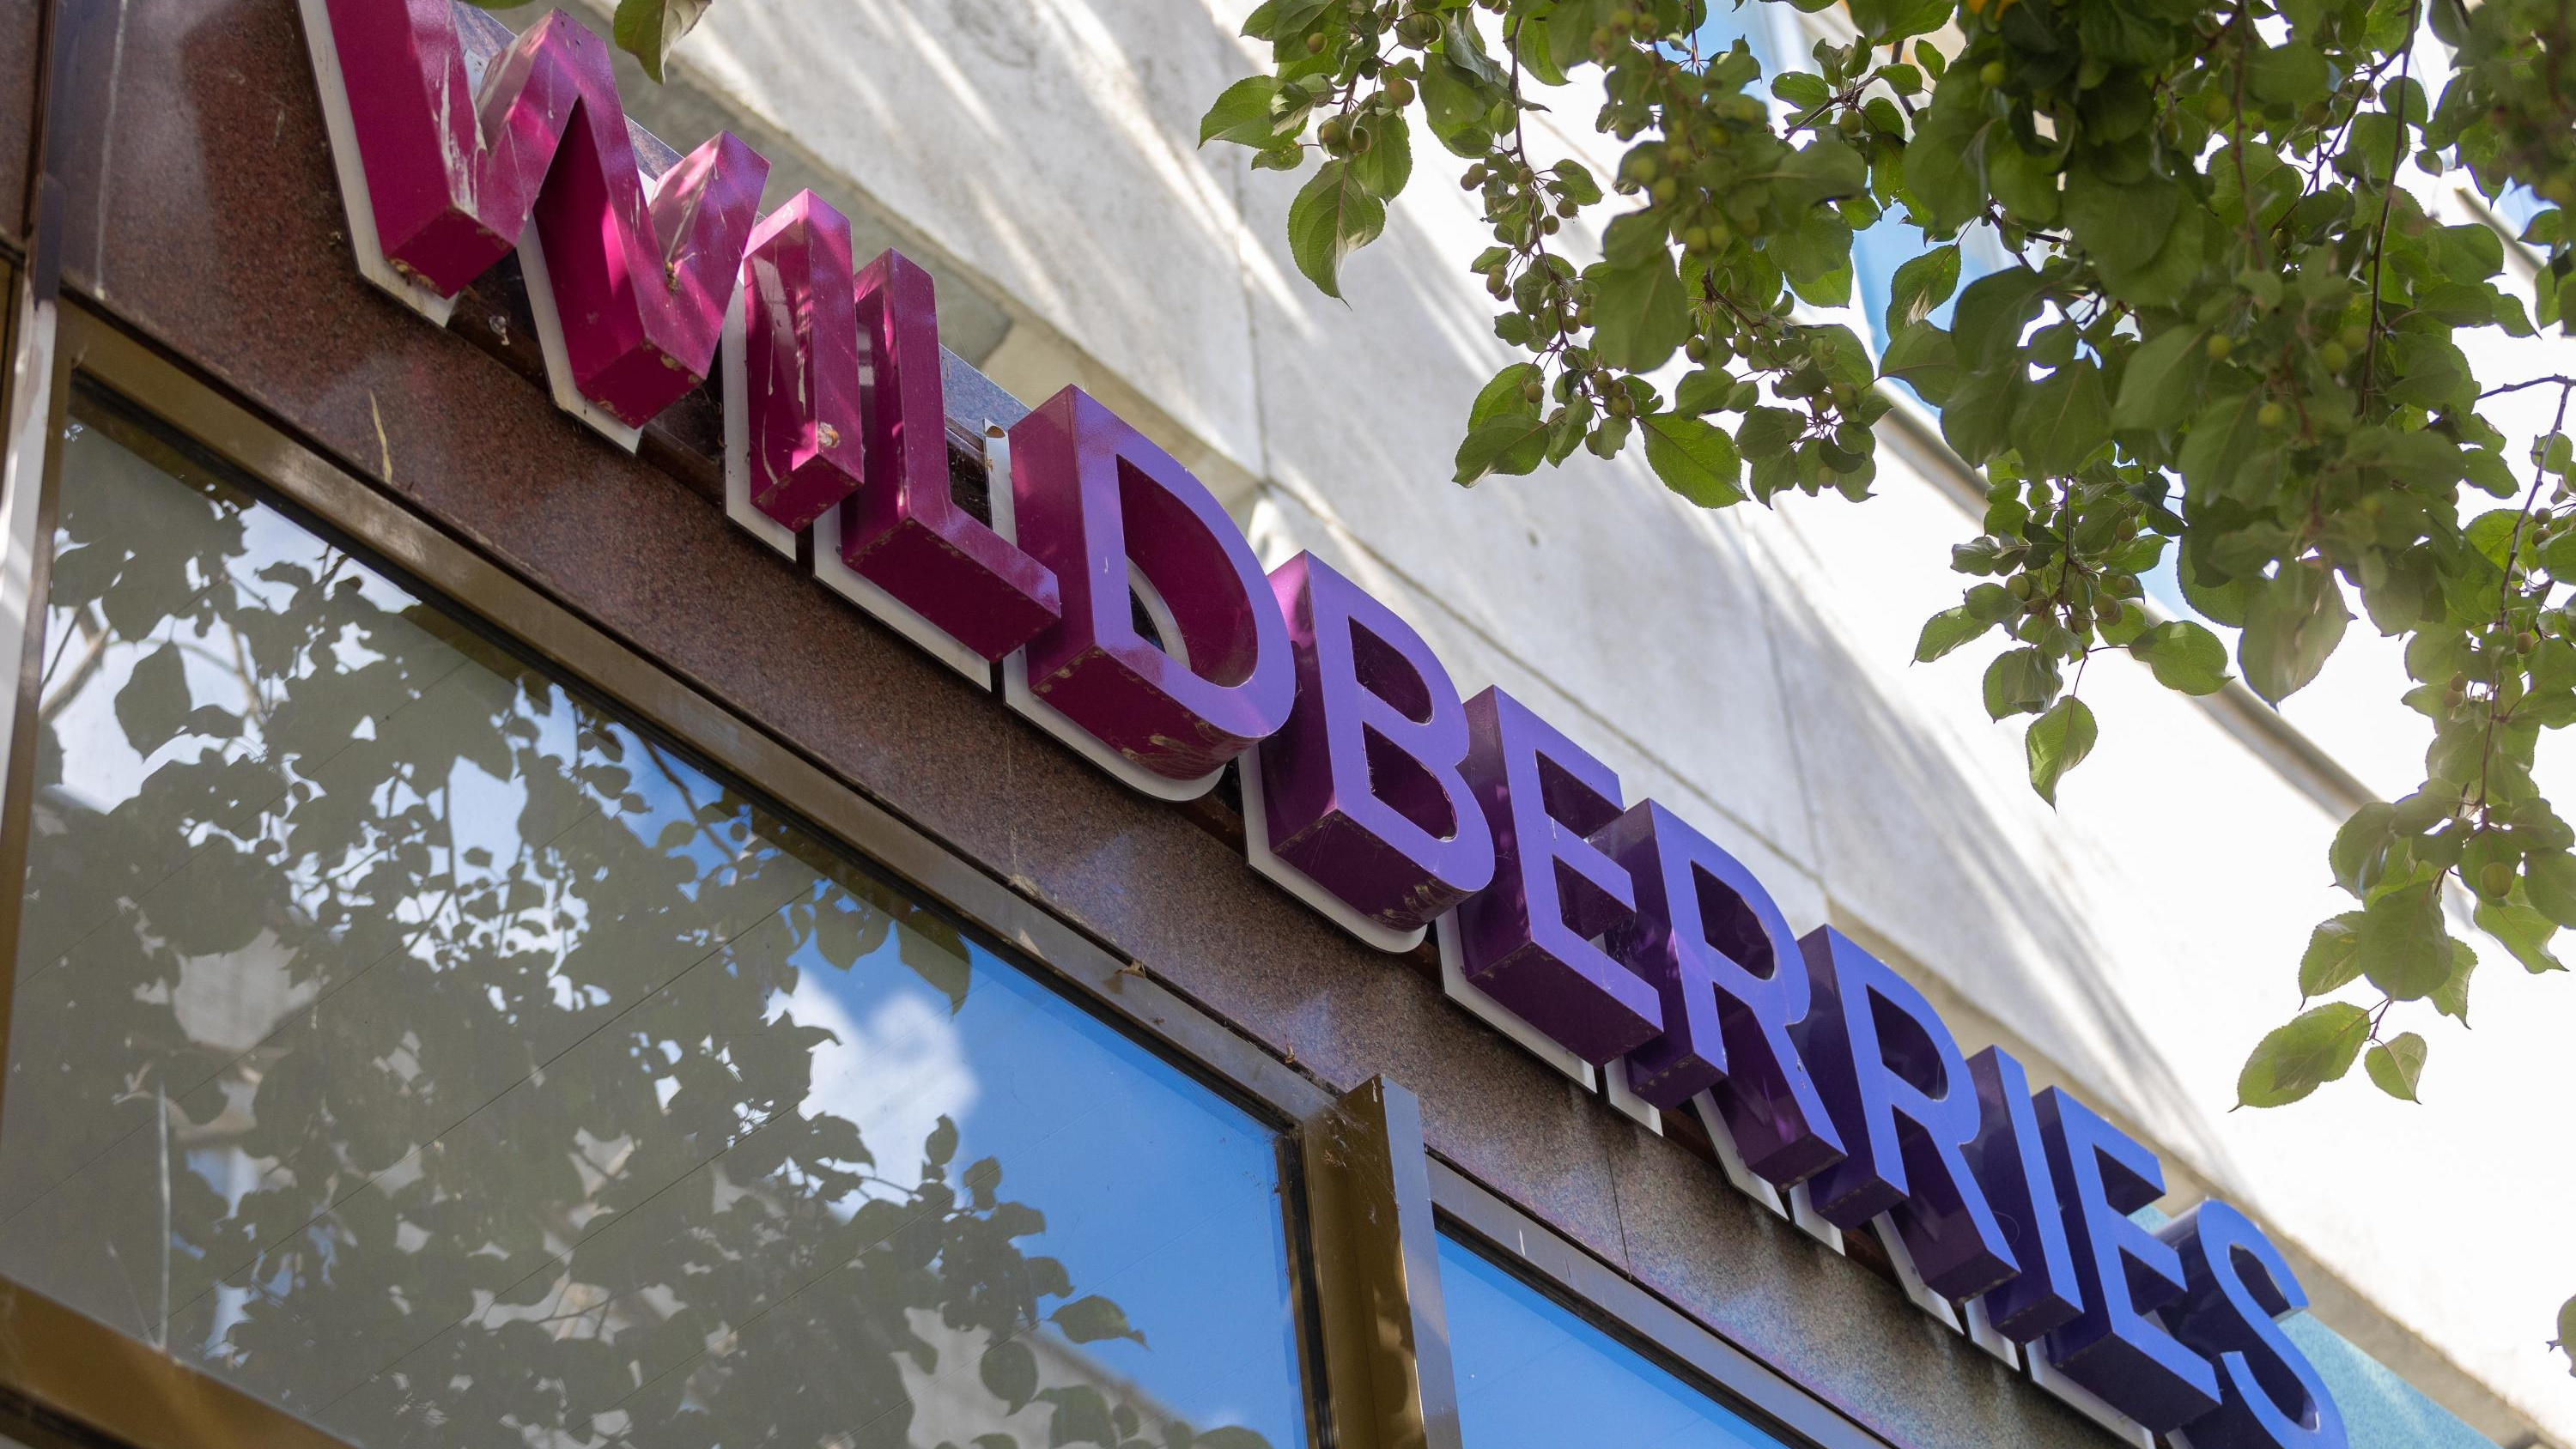 Склад Wildberries в Екатеринбурге закрыли из-за гибели сотрудницы. Что будет с вашими заказами?